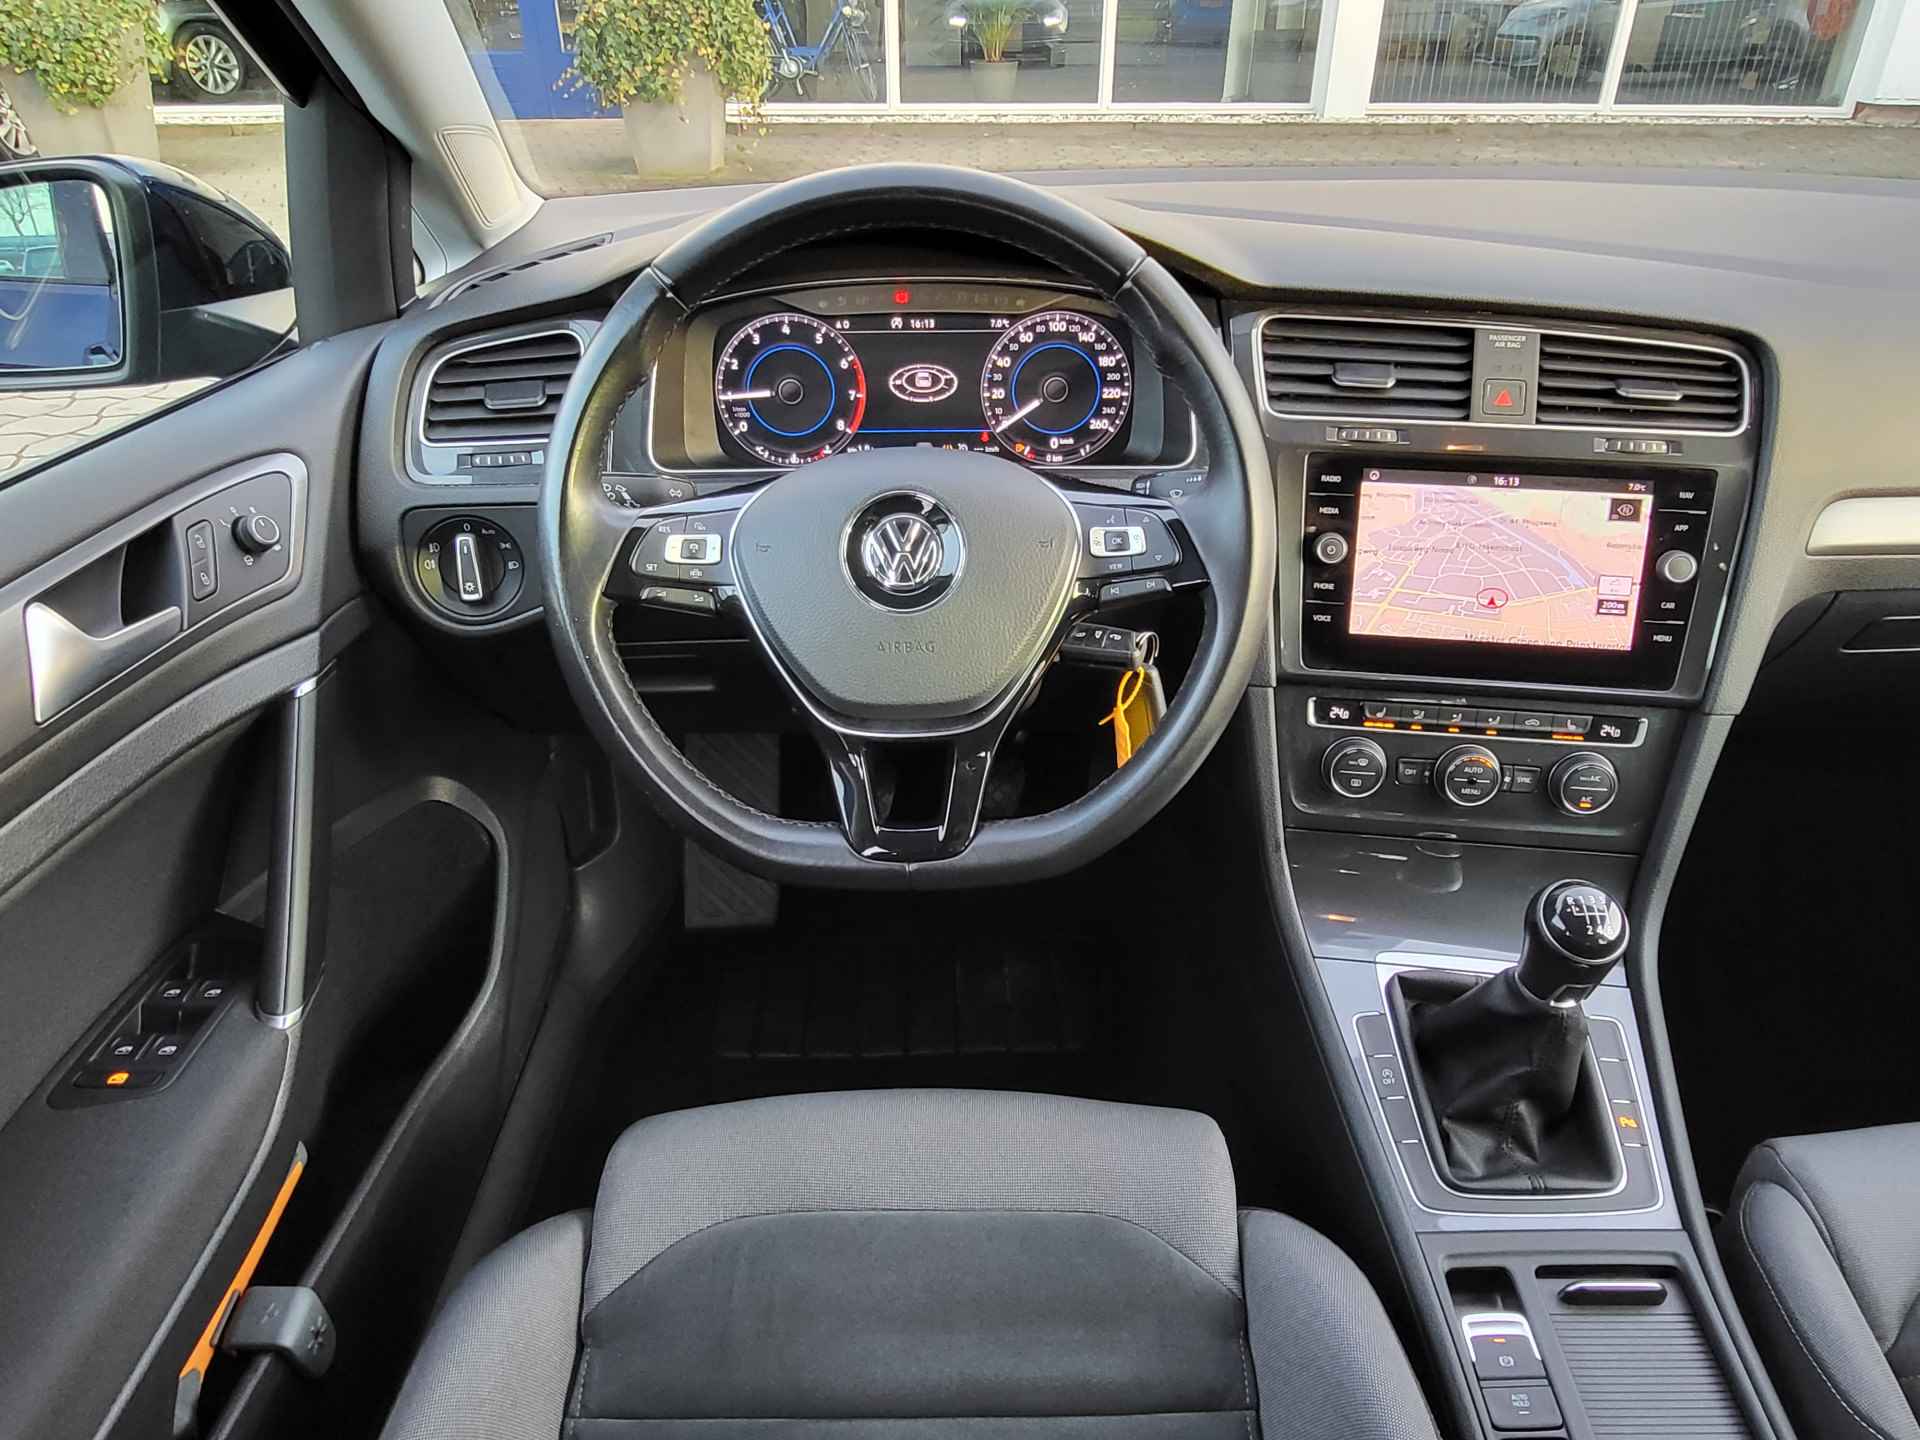 Volkswagen GOLF Variant 1.0 TSI Comfortline BNS, Virtual cockpit, Adapt cruise, Stoelverw, Rijklaar met beurt & garantie! - 12/37